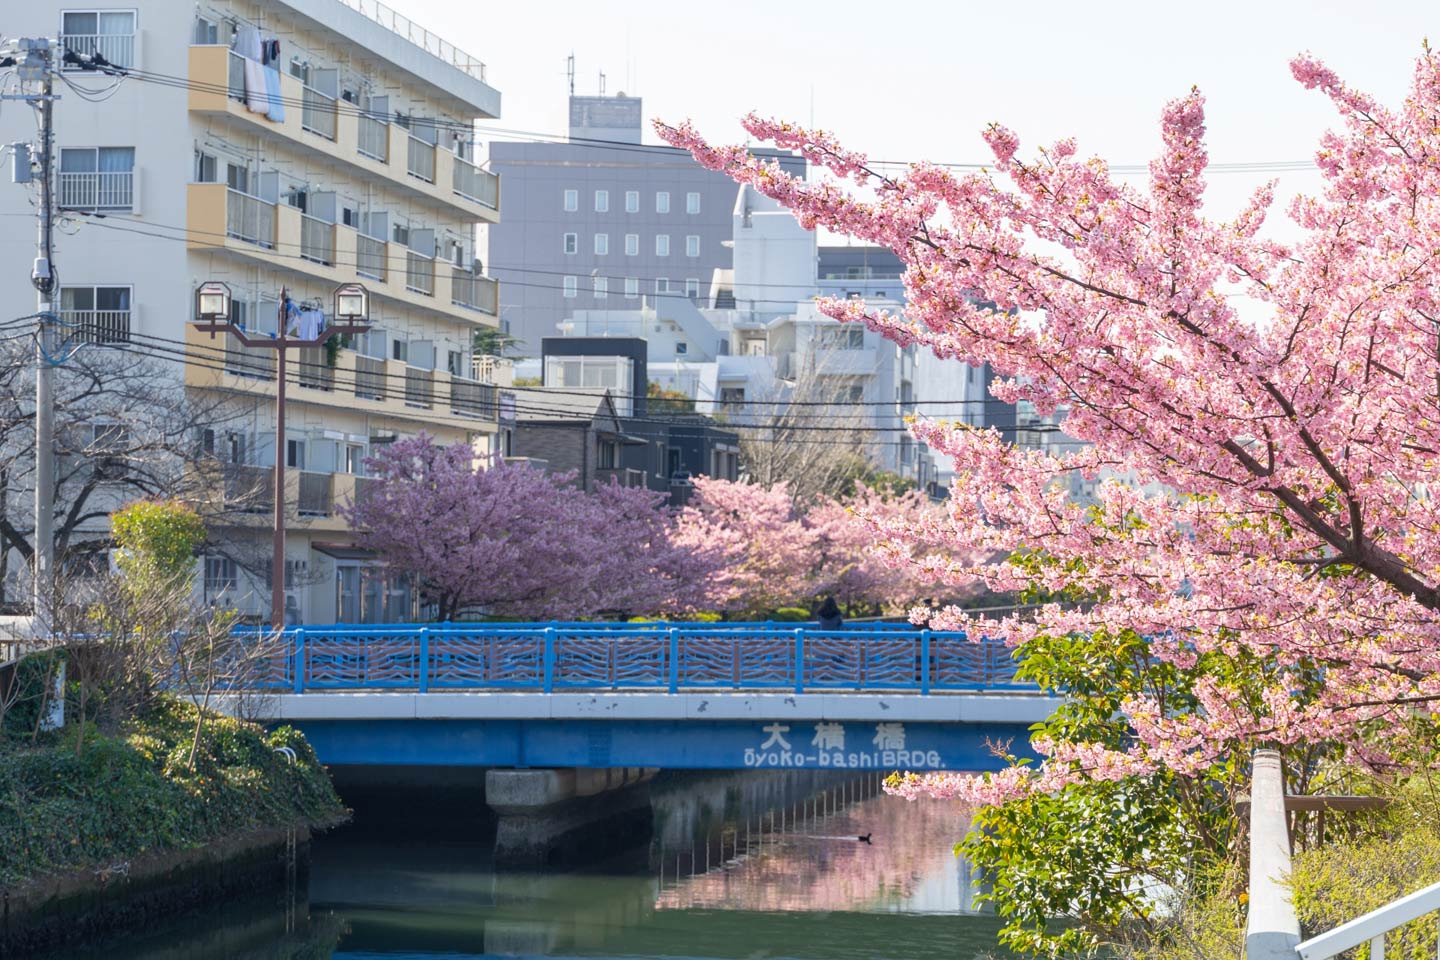 7 สถานที่ซ่อนเร้นเพื่อชมดอกซากุระบานในโตเกียวและรอบๆ โตเกียว